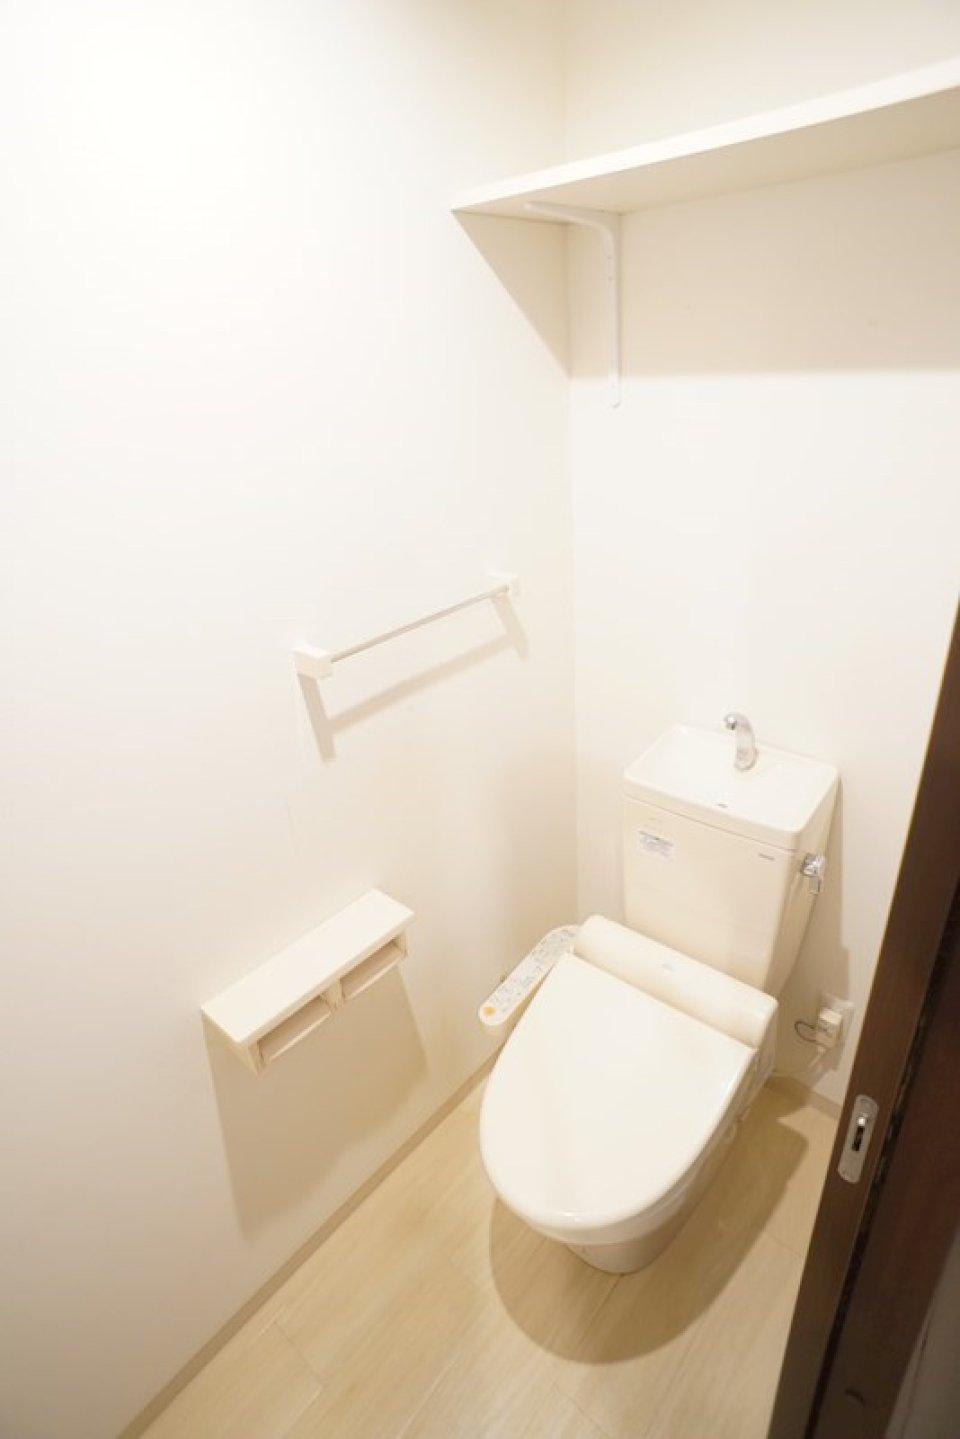 真っ白なトイレ。トイレットペーパーホルダーは2か所についているのですぐに紙切れになる心配はありません。